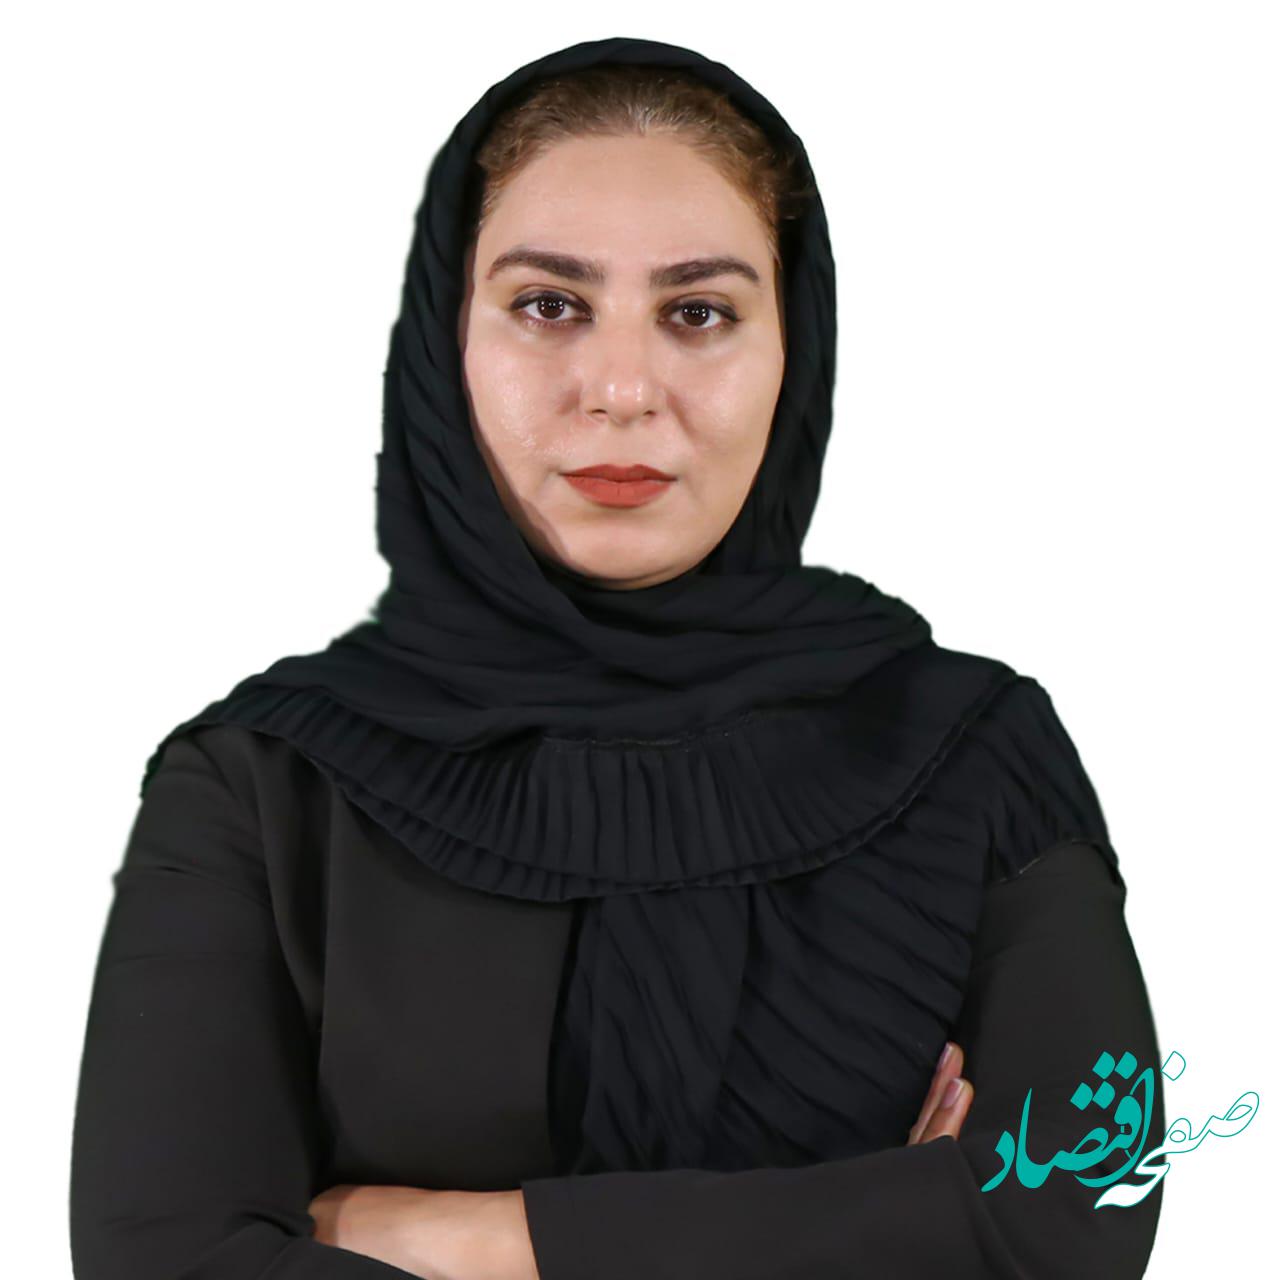 زهرا جلاییان؛ متخصص فناوری اطلاعات